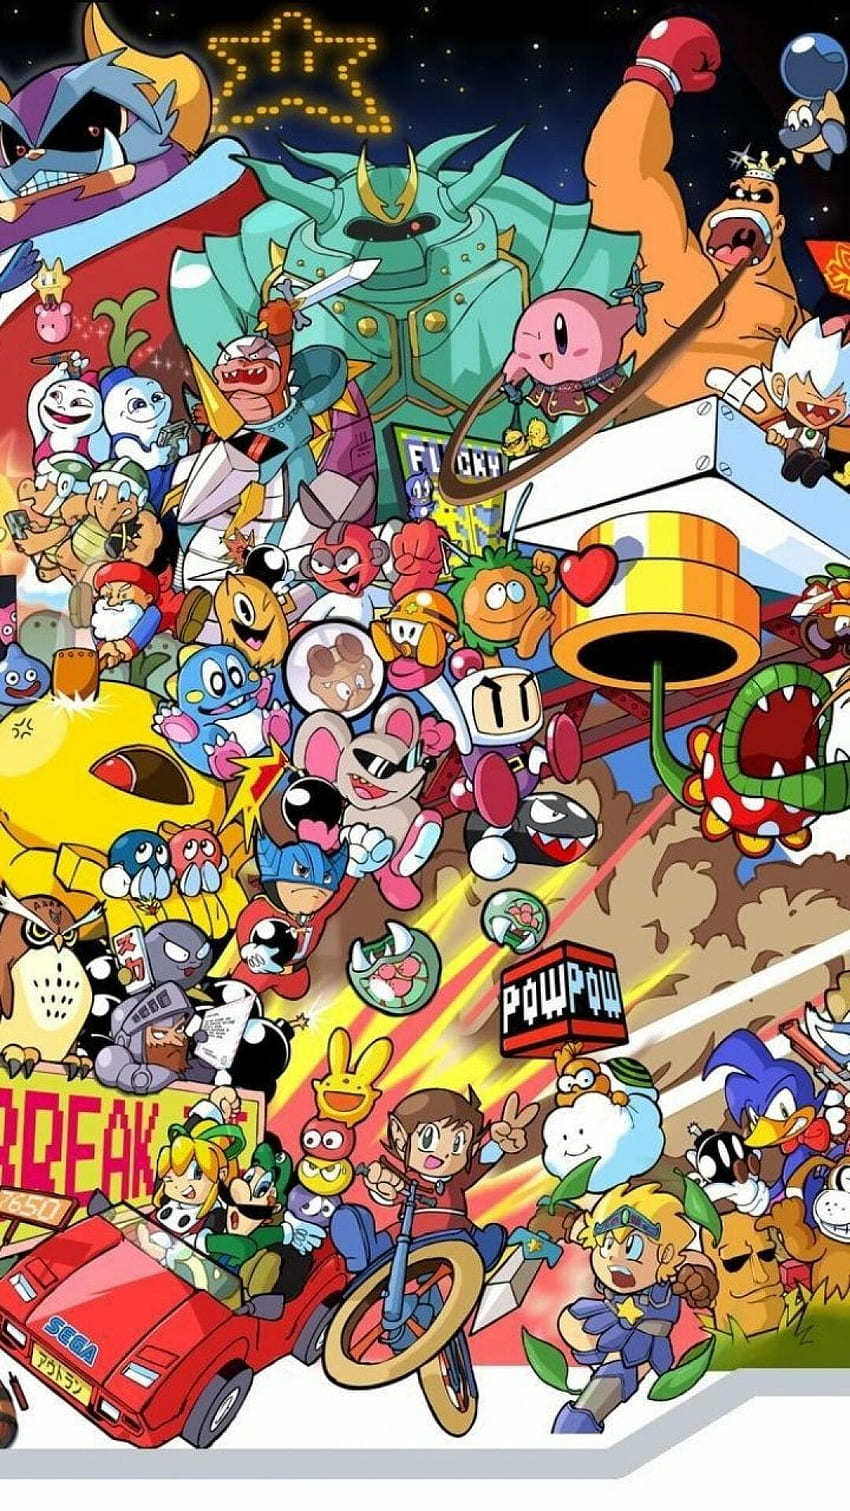 Trò chơi điện tử Nintendo là một trong những thương hiệu game nổi tiếng và được yêu thích nhất trên thế giới. Hình ảnh từ game vừa gợi nhớ lại ký ức tuổi thơ vừa đem lại niềm vui thư giãn cho người chơi. Hãy thưởng thức hình ảnh liên quan đến trò chơi này và cùng tìm hiểu thêm về thế giới game của Nintendo. 